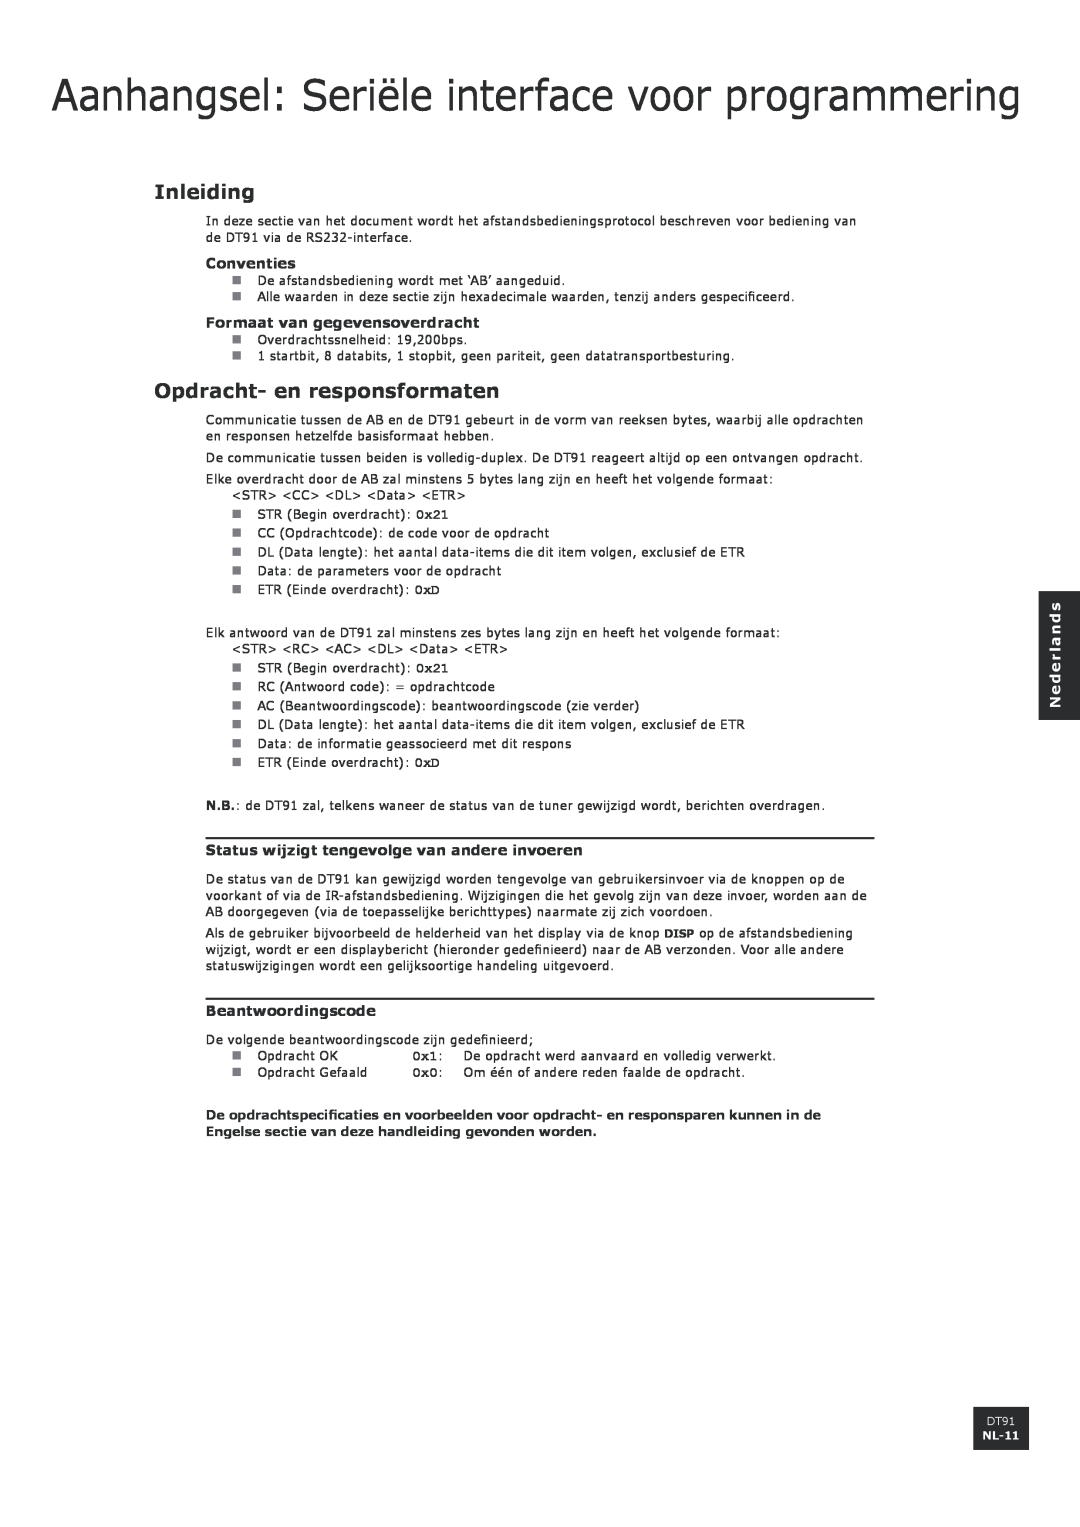 Arcam DT91 manual Inleiding, Opdracht- en responsformaten, Conventies, Formaat van gegevensoverdracht, Beantwoordingscode 